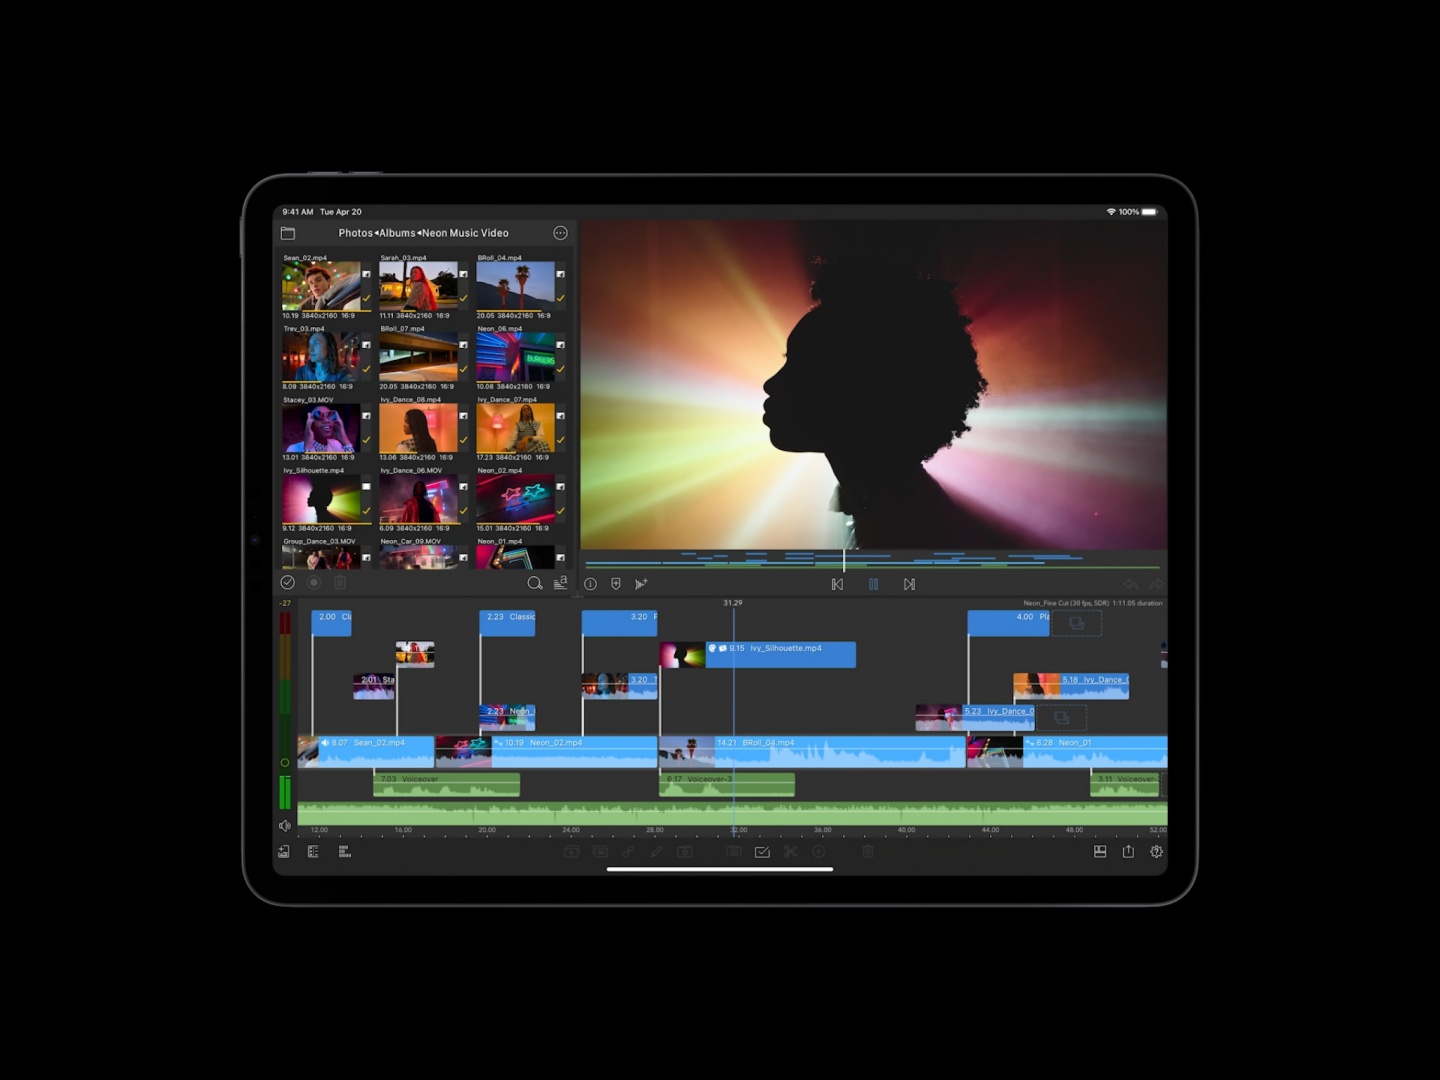 全新 iPad Pro 來了！採用 mini-LED 面板、M1 晶片，共推出 12.9 吋和 11 吋兩種機型